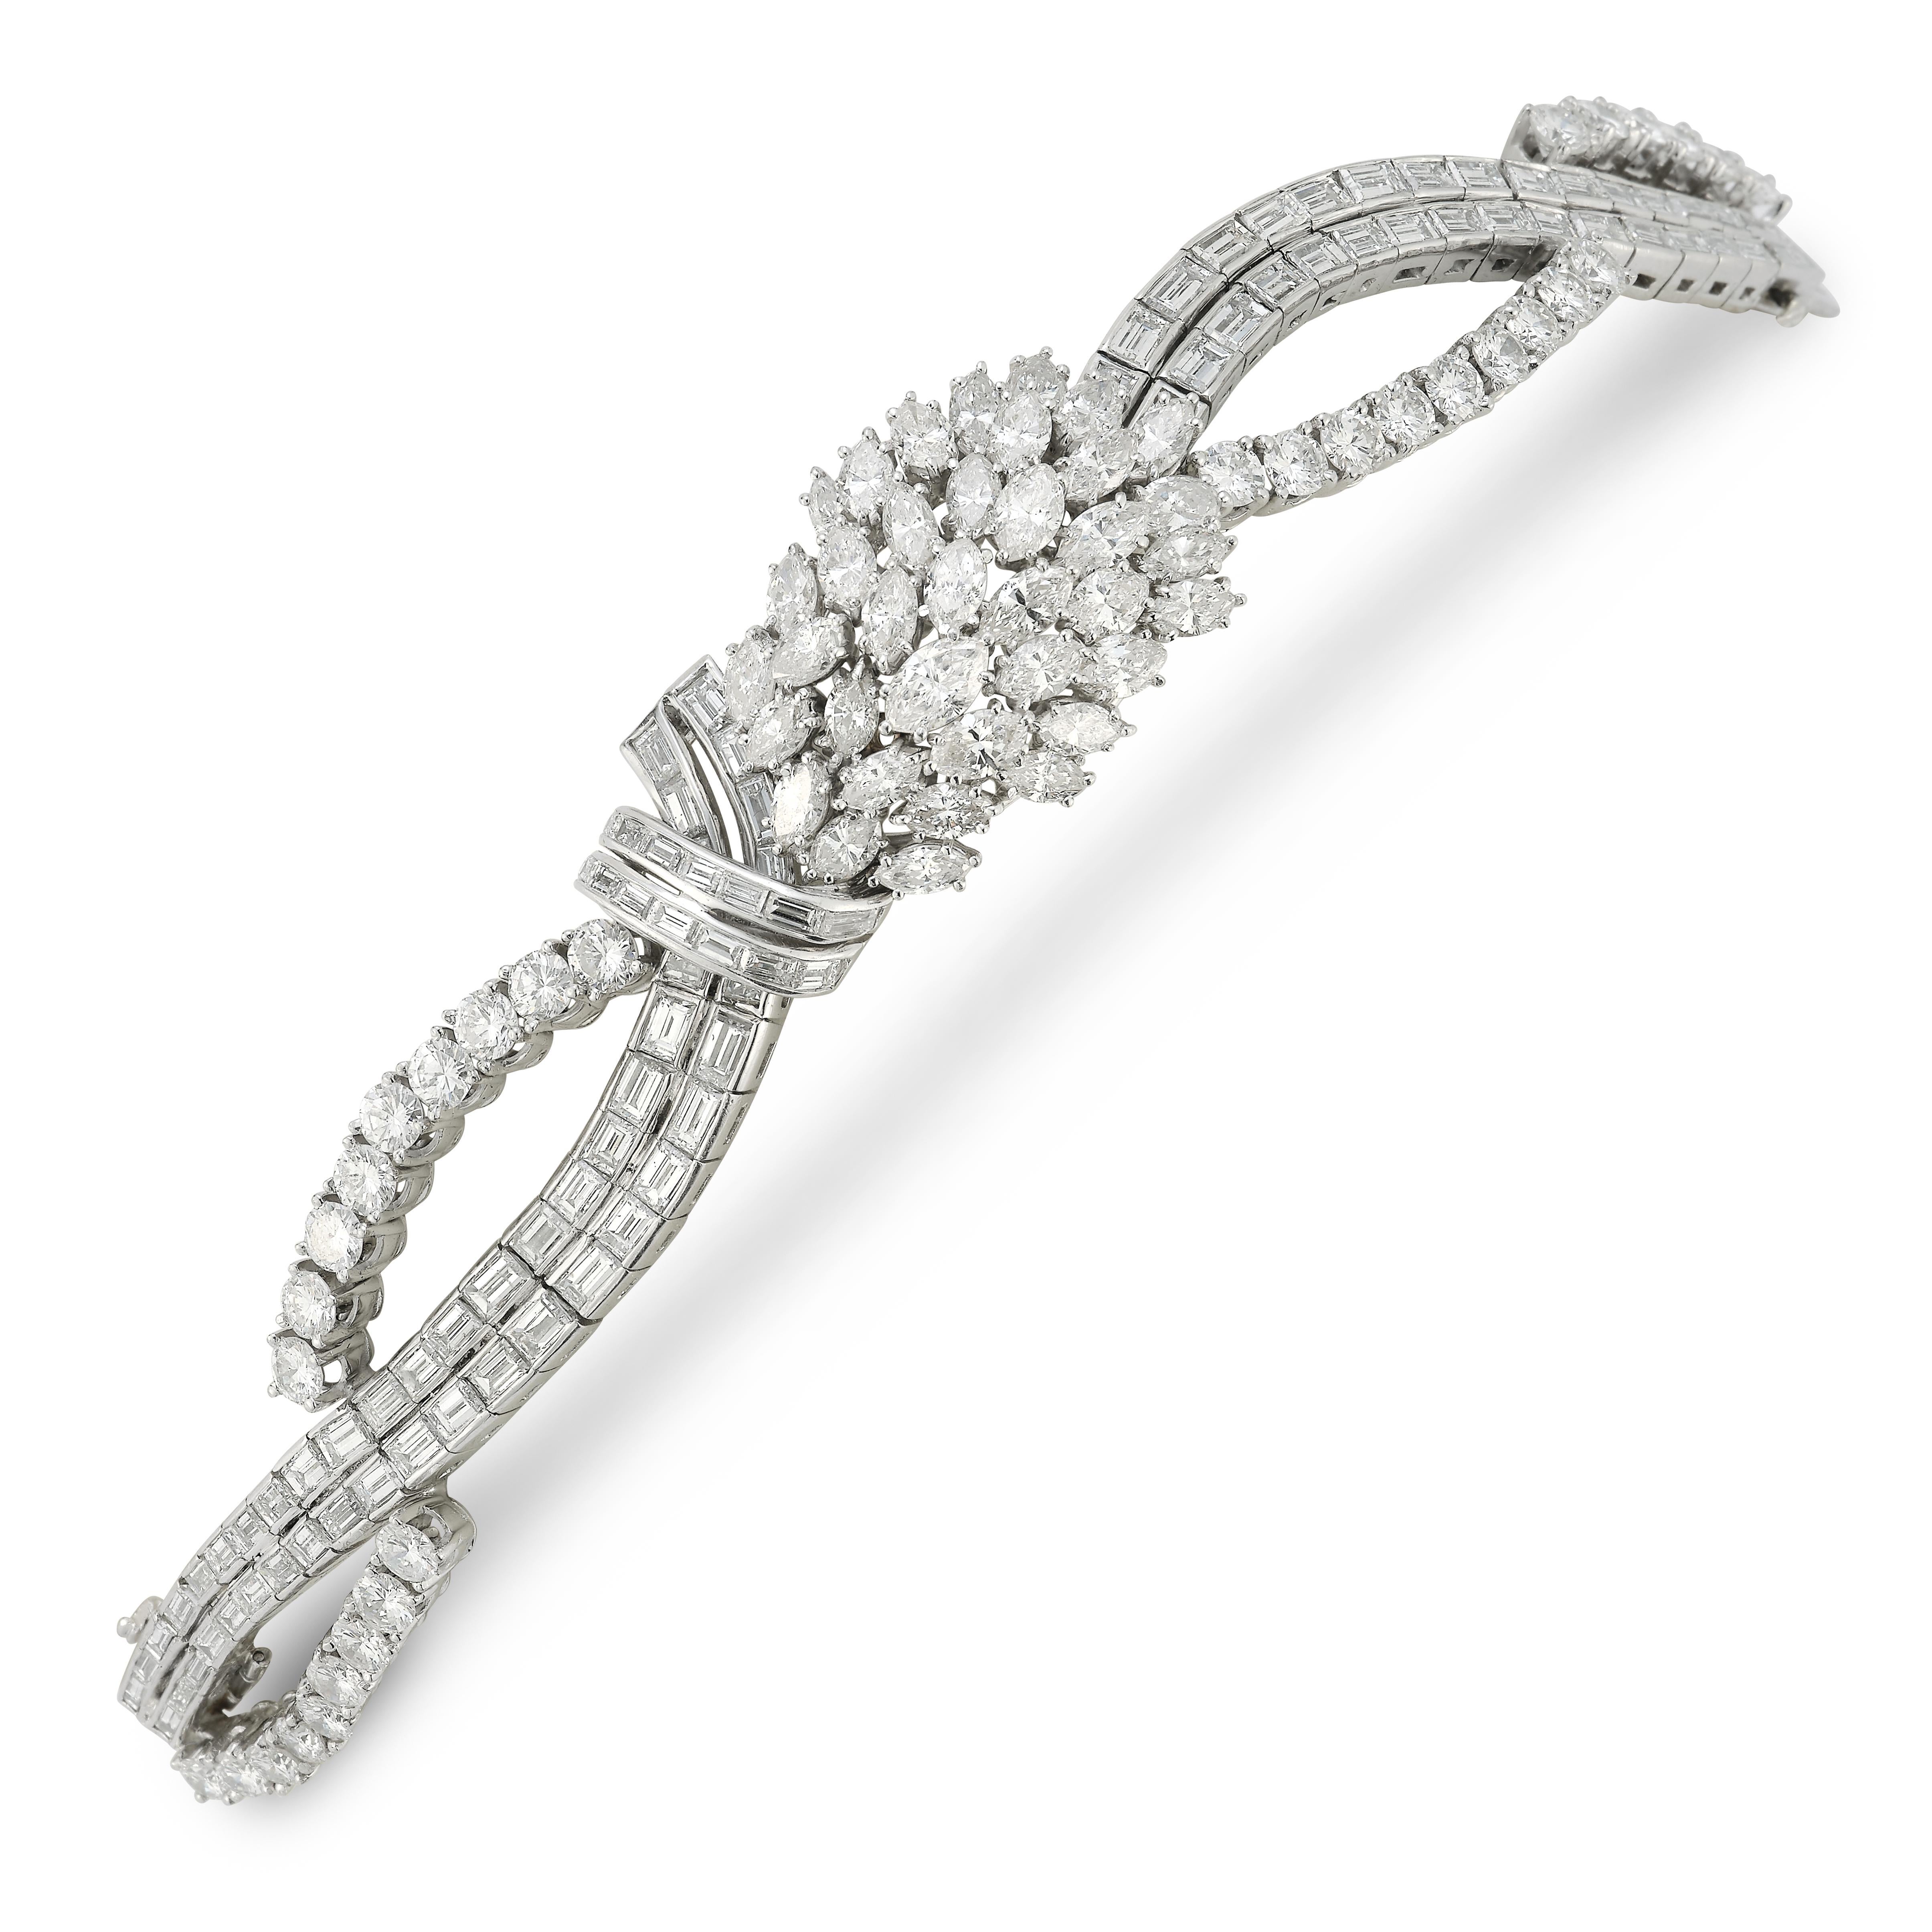 Mid Century Diamant-Cluster-Armband

Armband aus 18 Karat Weißgold, besetzt mit 33 runden Diamanten, 37 Marquise-Diamanten und 97 Baguette-Diamanten

Ungefähres Gesamtgewicht der Diamanten: 28 Karat

Länge: 6,5